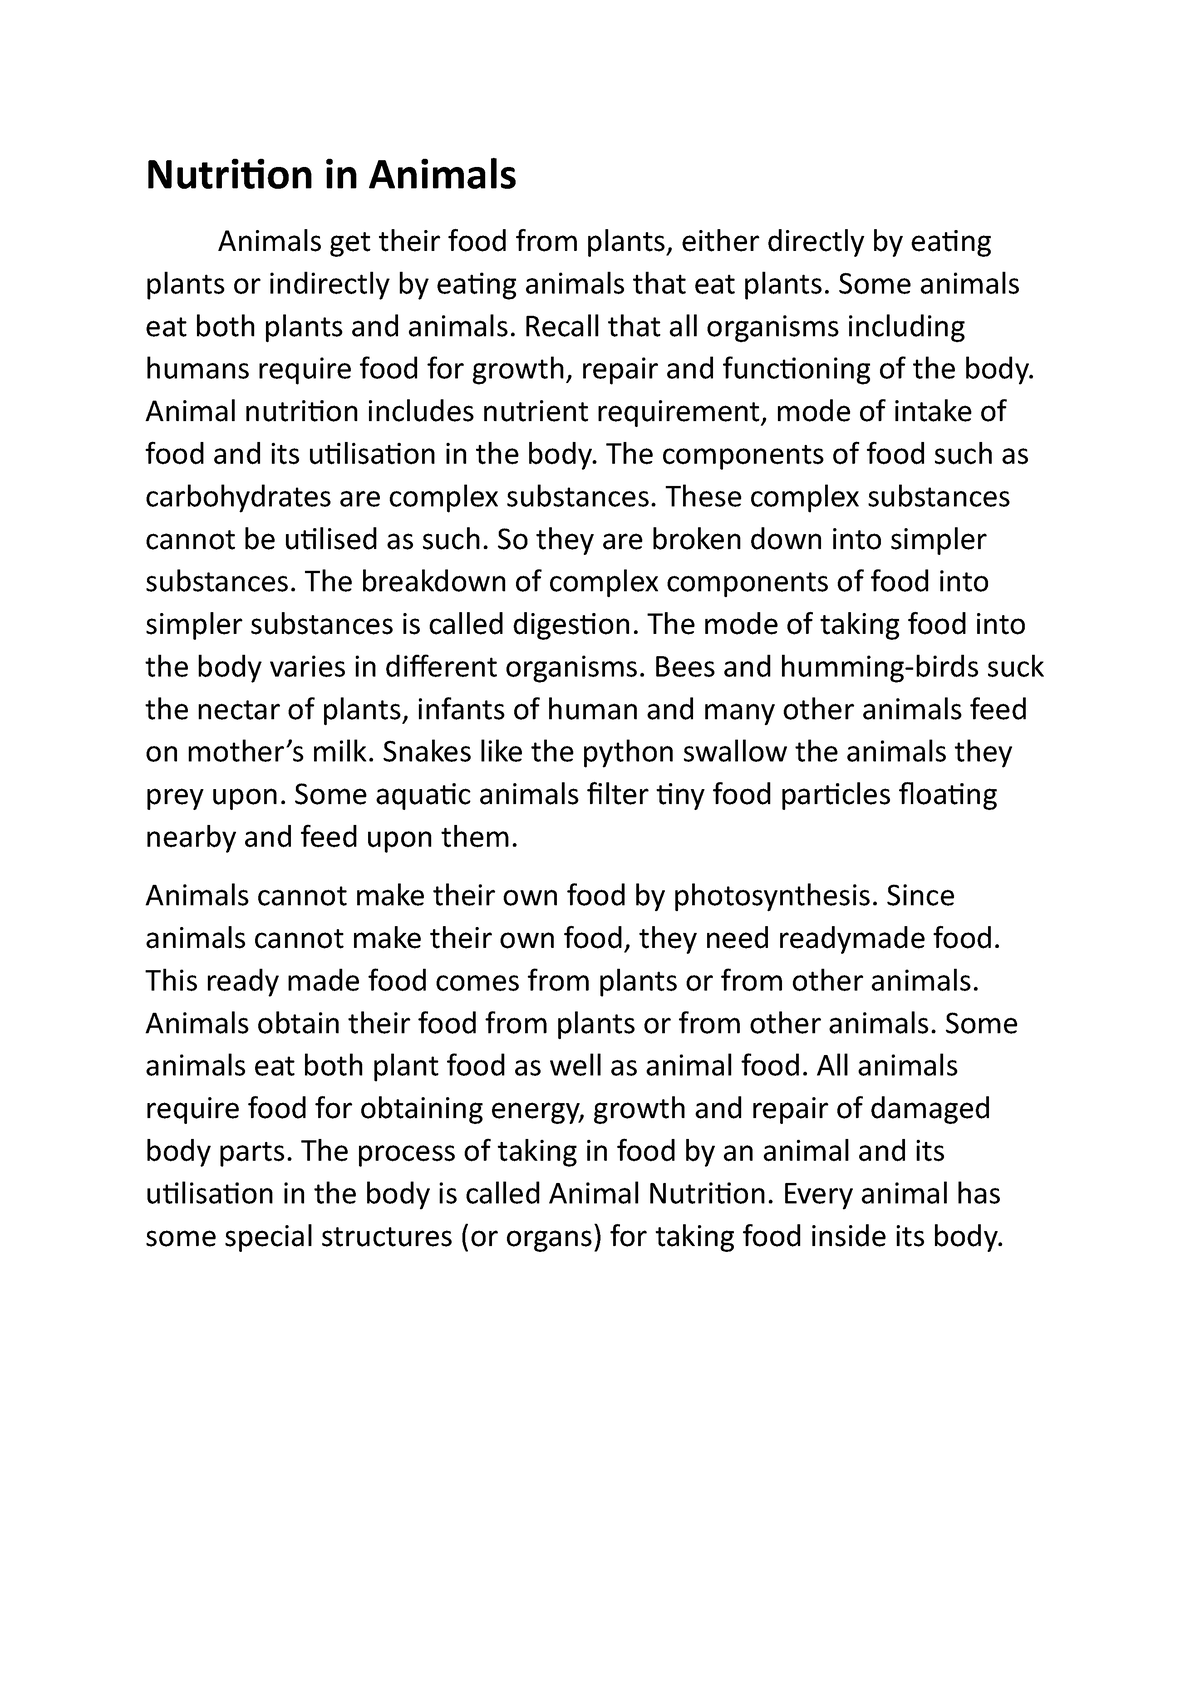 an essay on animal nutrition